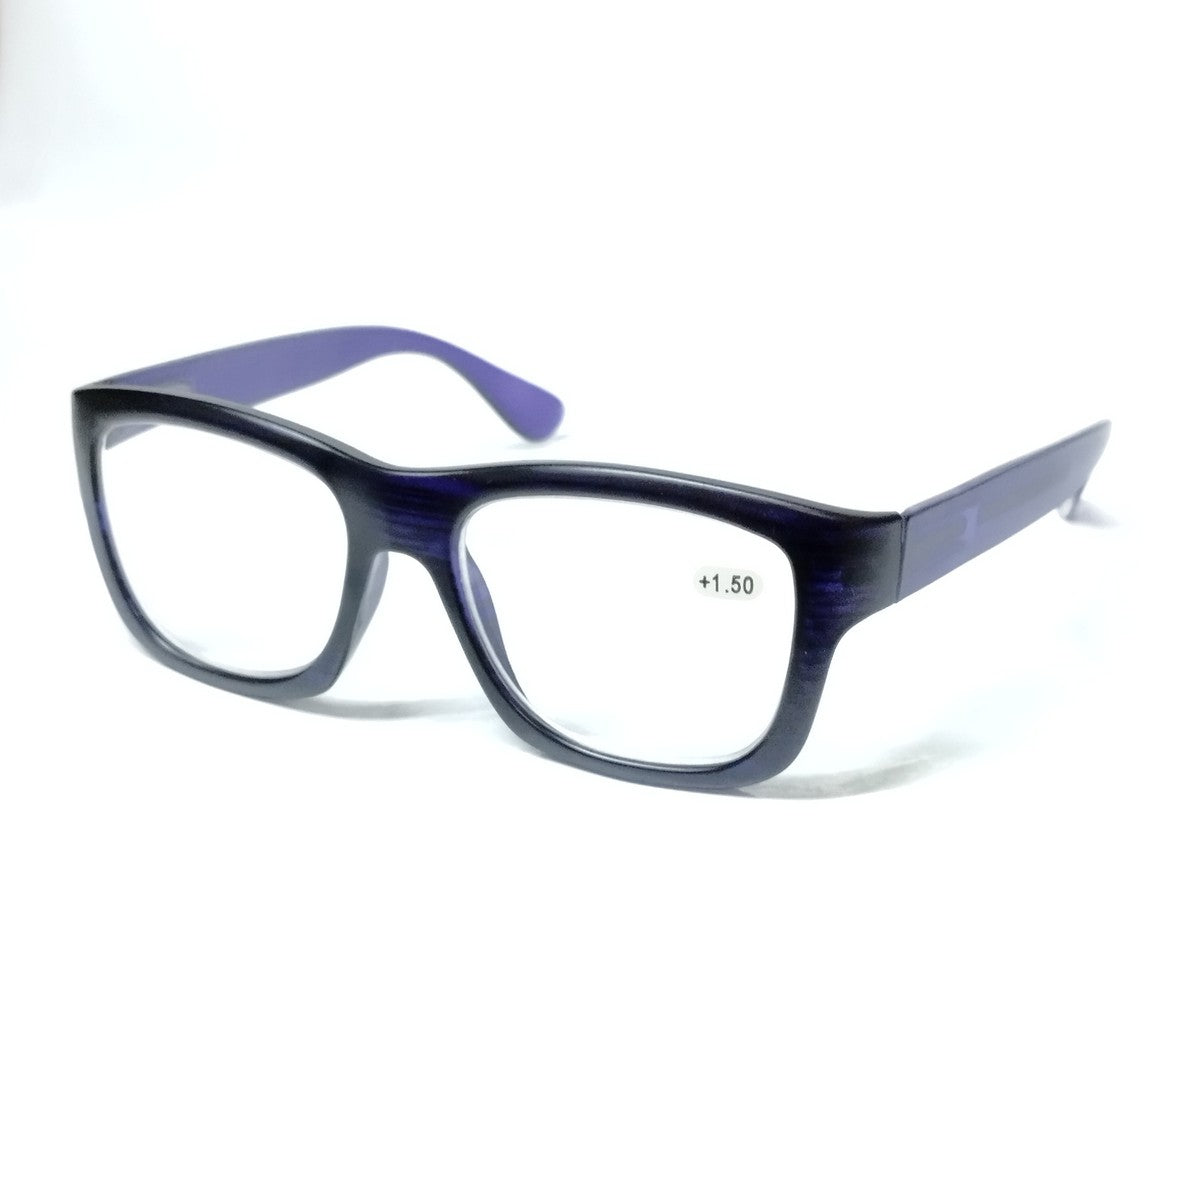 Blue Progressive Glasses for Computers Multifocal Reading Glasses for Men Women